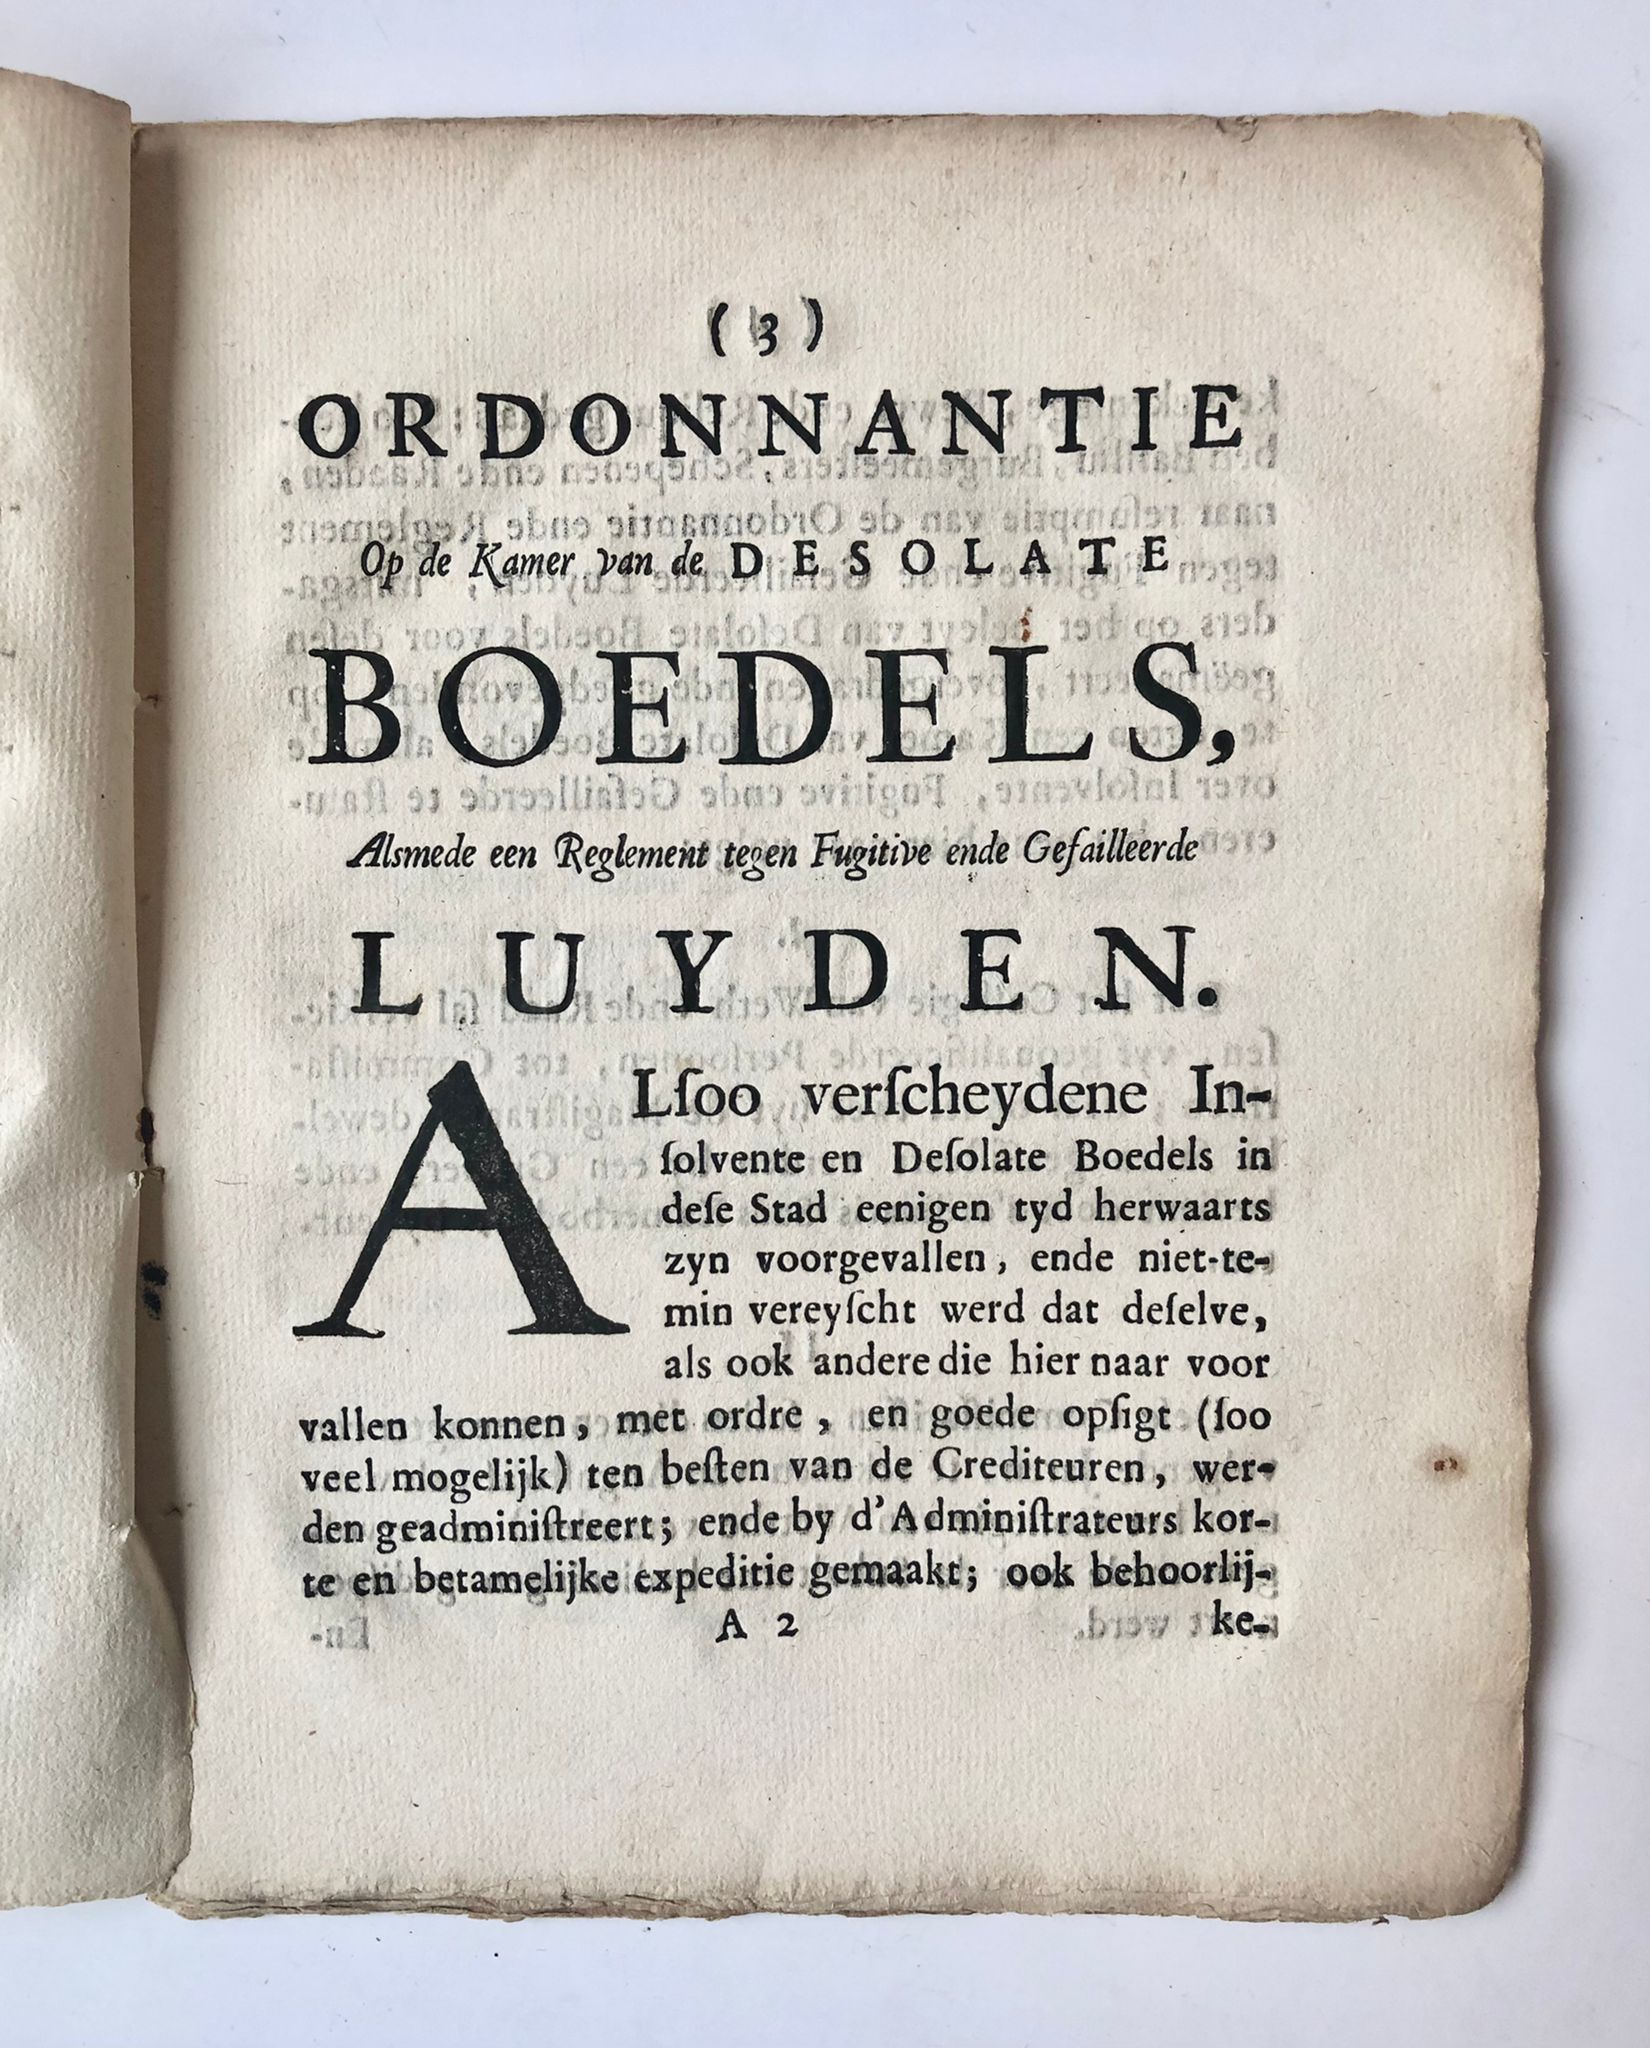 [Zeeland, ca 1760] Ordonnantie op de Kamer van de desolate Boedels, Alsmede een Reglement tegen Fugitive ende Gefailleerde Luyden, Gedrukt by Willem de Klerk, tot Middelburg, [20 Aug. 1661. Vernieuwt: 7 July 1708], 24 pp.